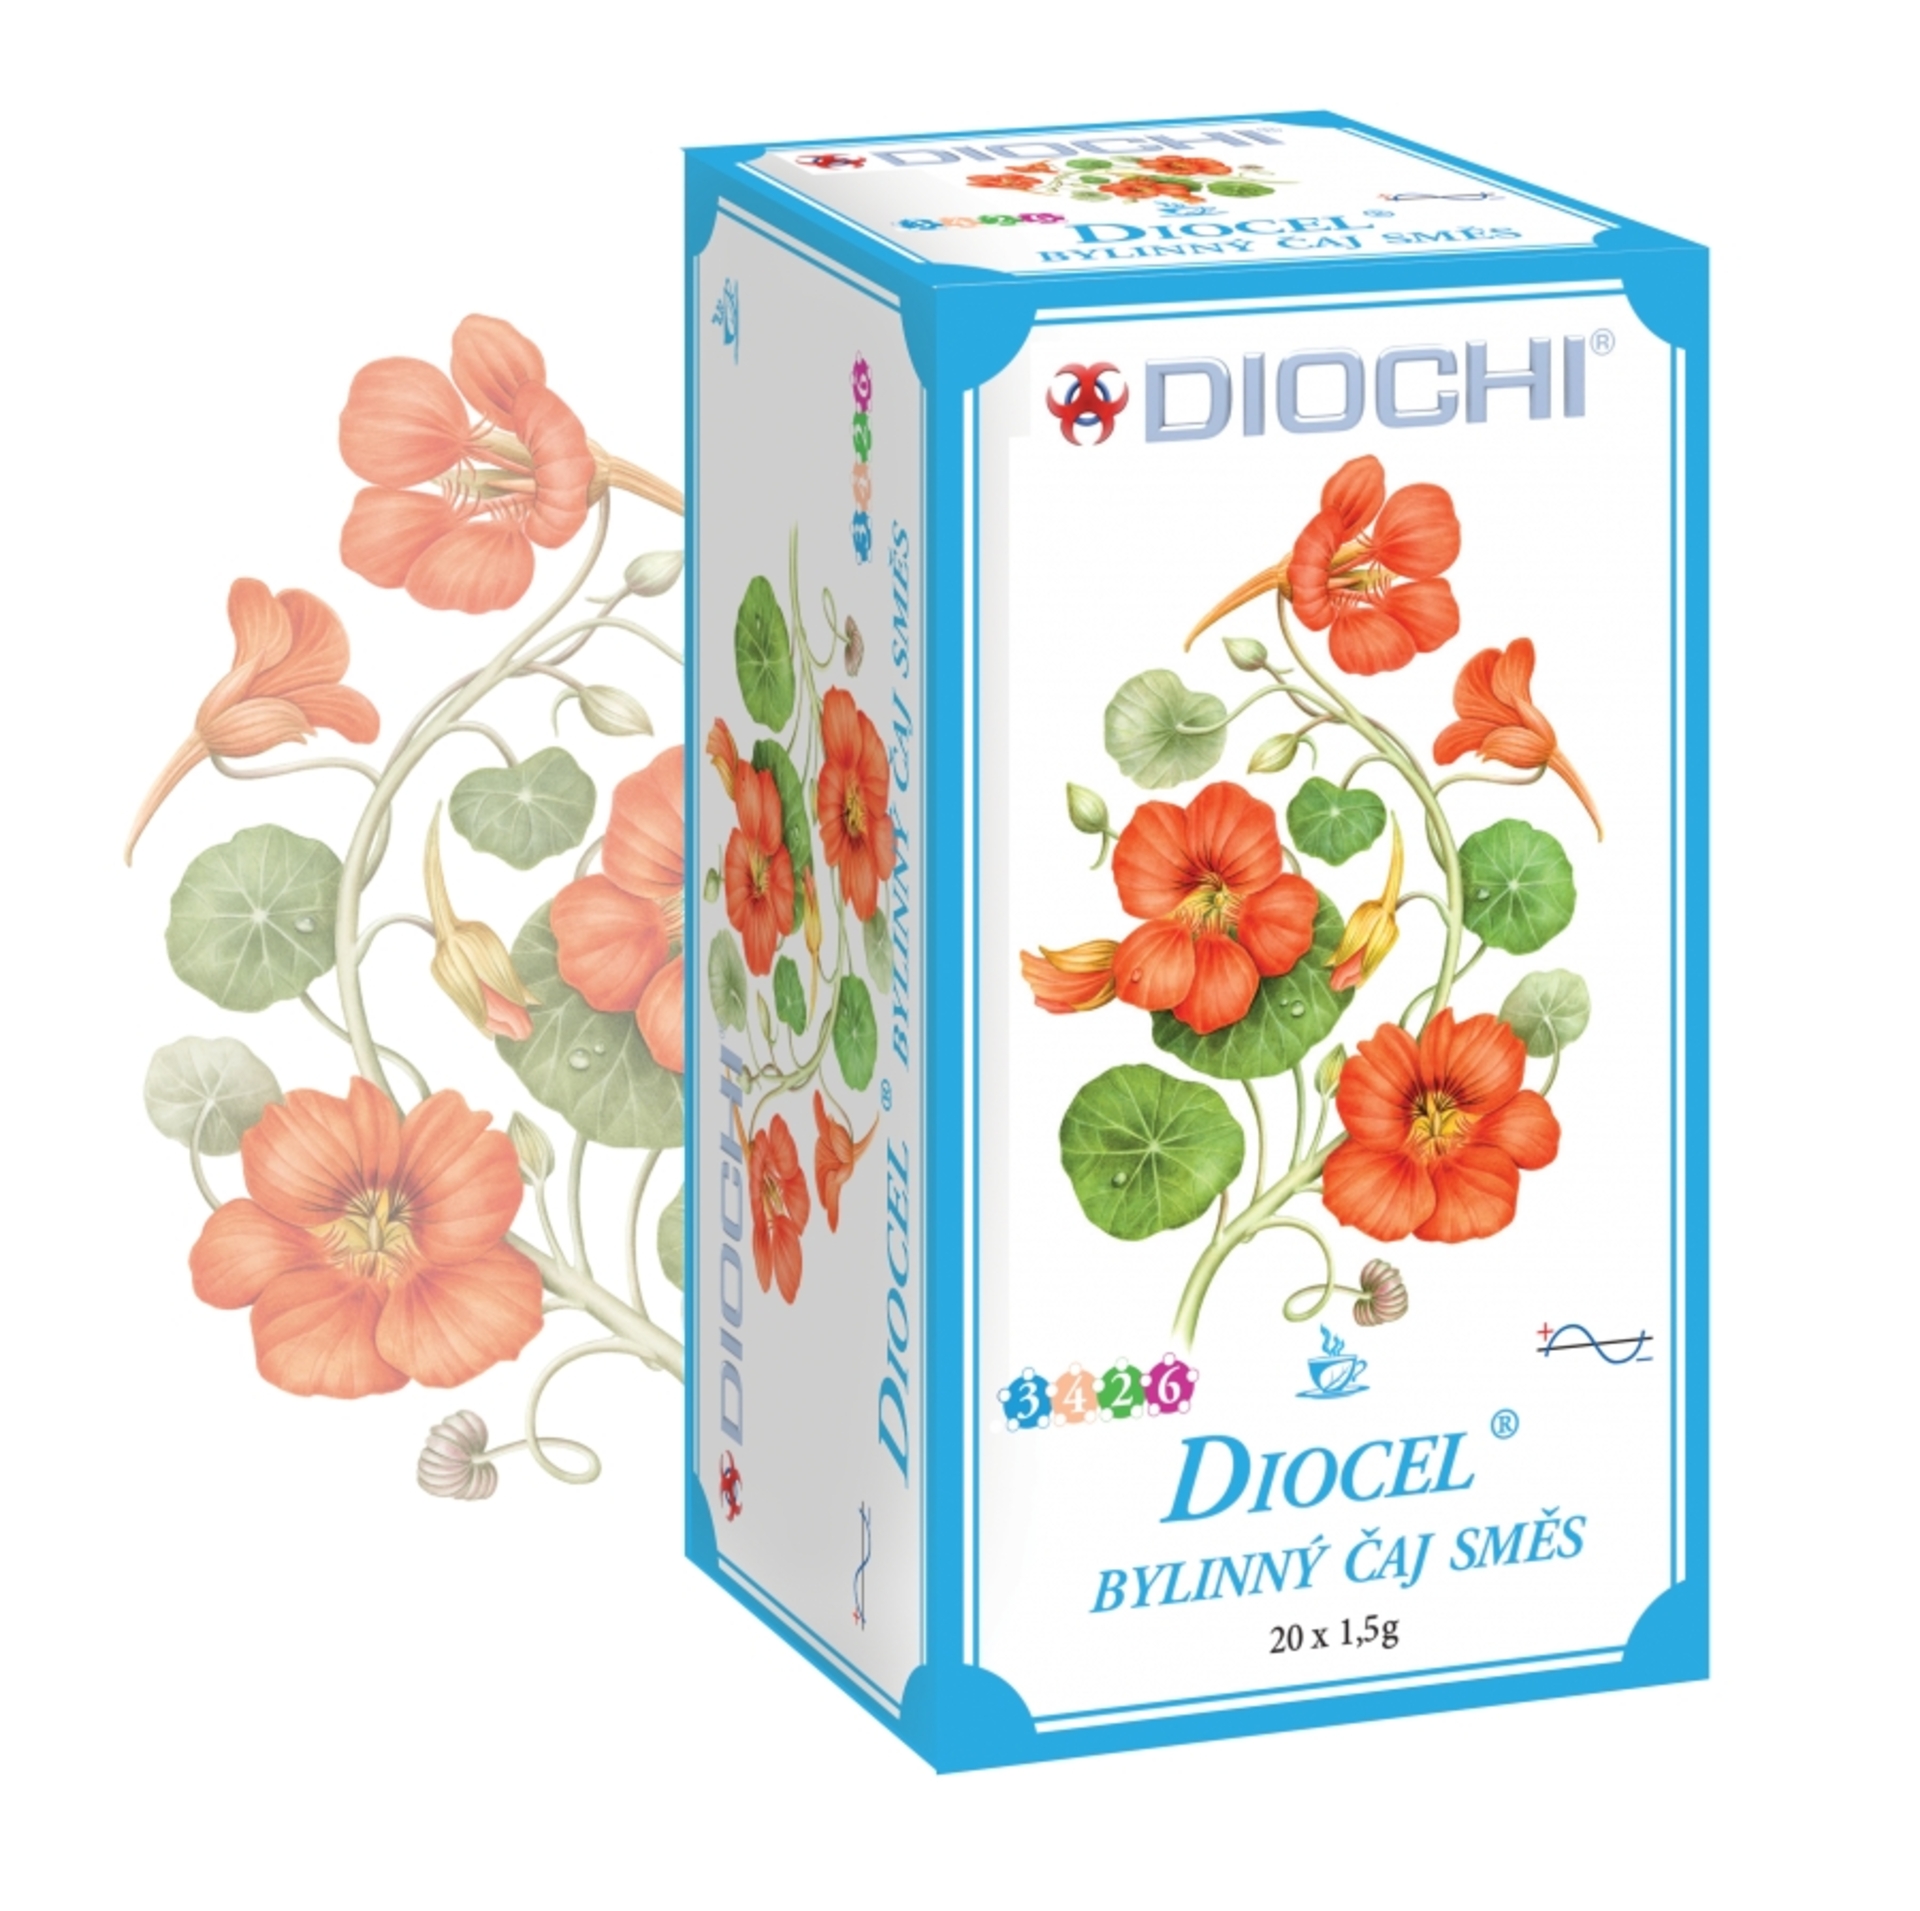 Diochi Diocel bylinný nápoj - nálevové sáčky 20x1